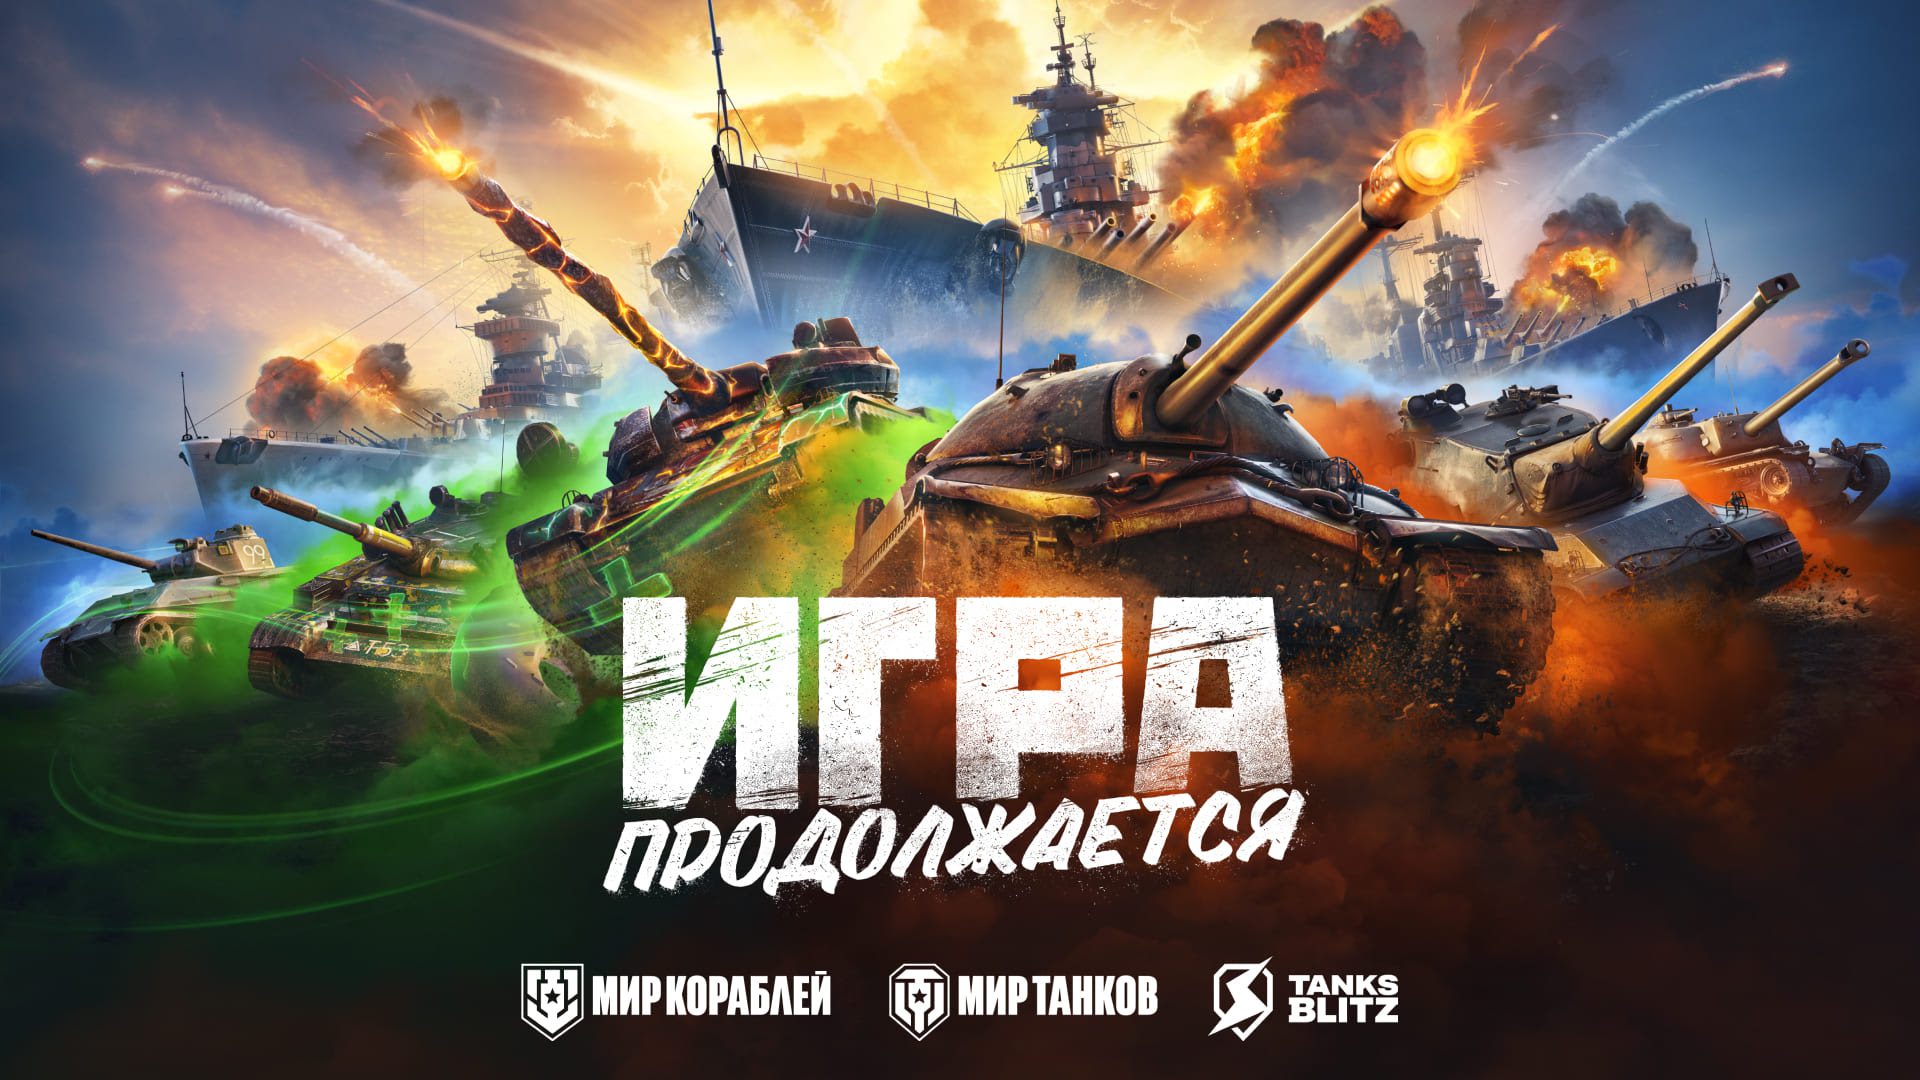 Объявлено о российском ребрендинге игры World of tanks | Digital Russia